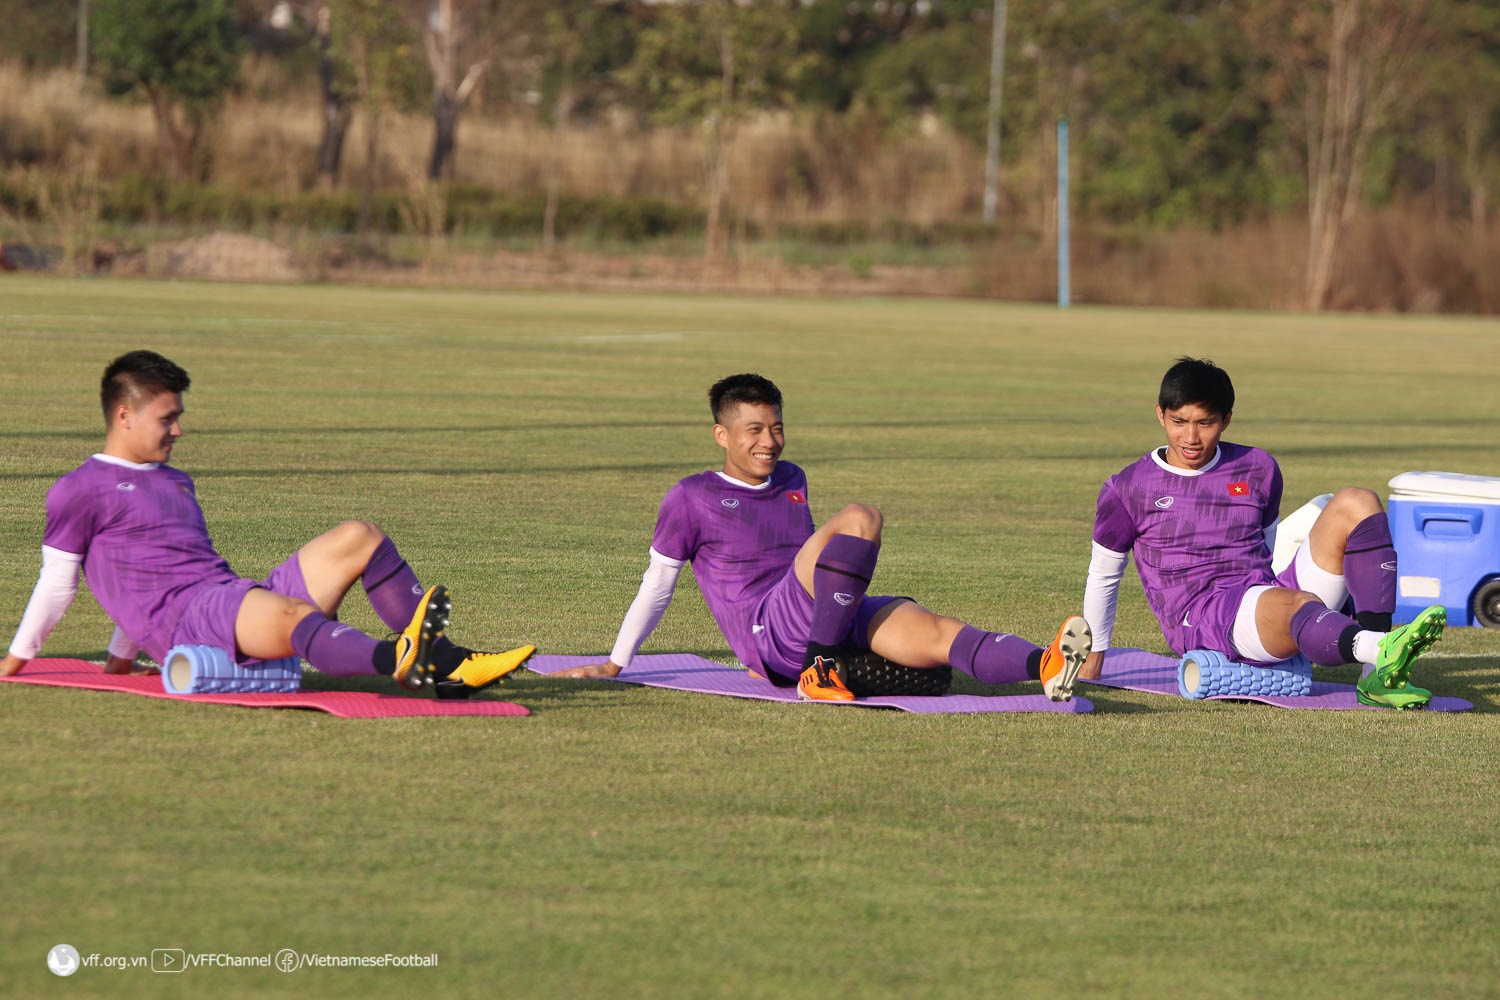 HLV Park Hang-seo tập trung rèn thể lực cho Phan Văn Đức trước trận đấu với Lào - Ảnh 1.